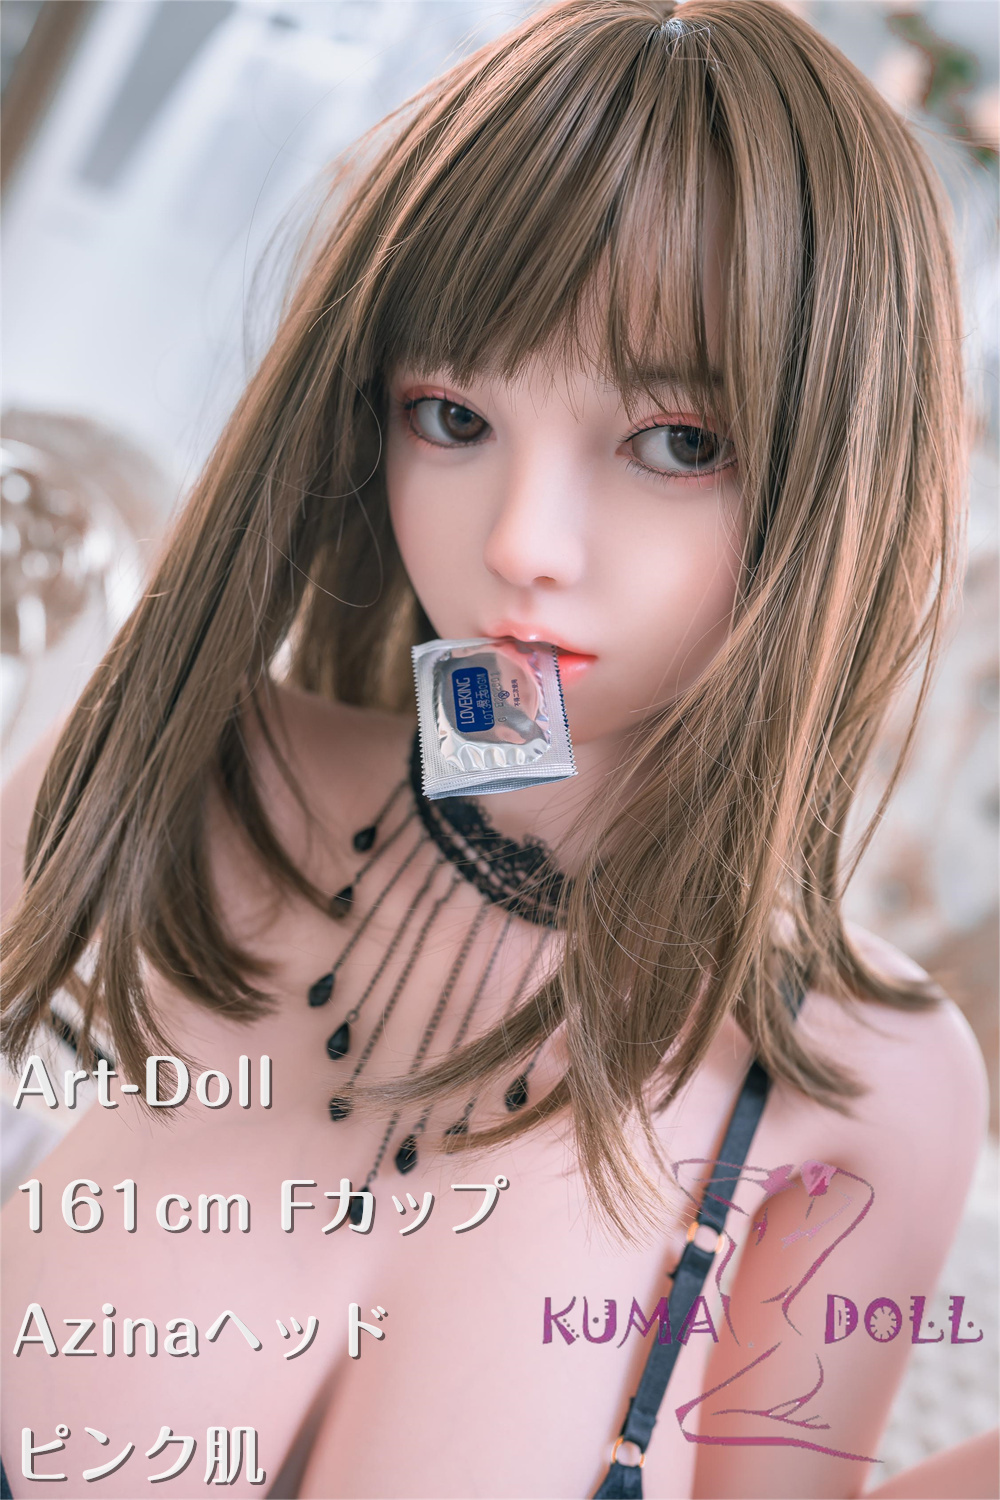 アート技研(Art-doll) 161cm Fカップ Azinaヘッド フルシリコン製ラブドール  M16ジョイント汎用版